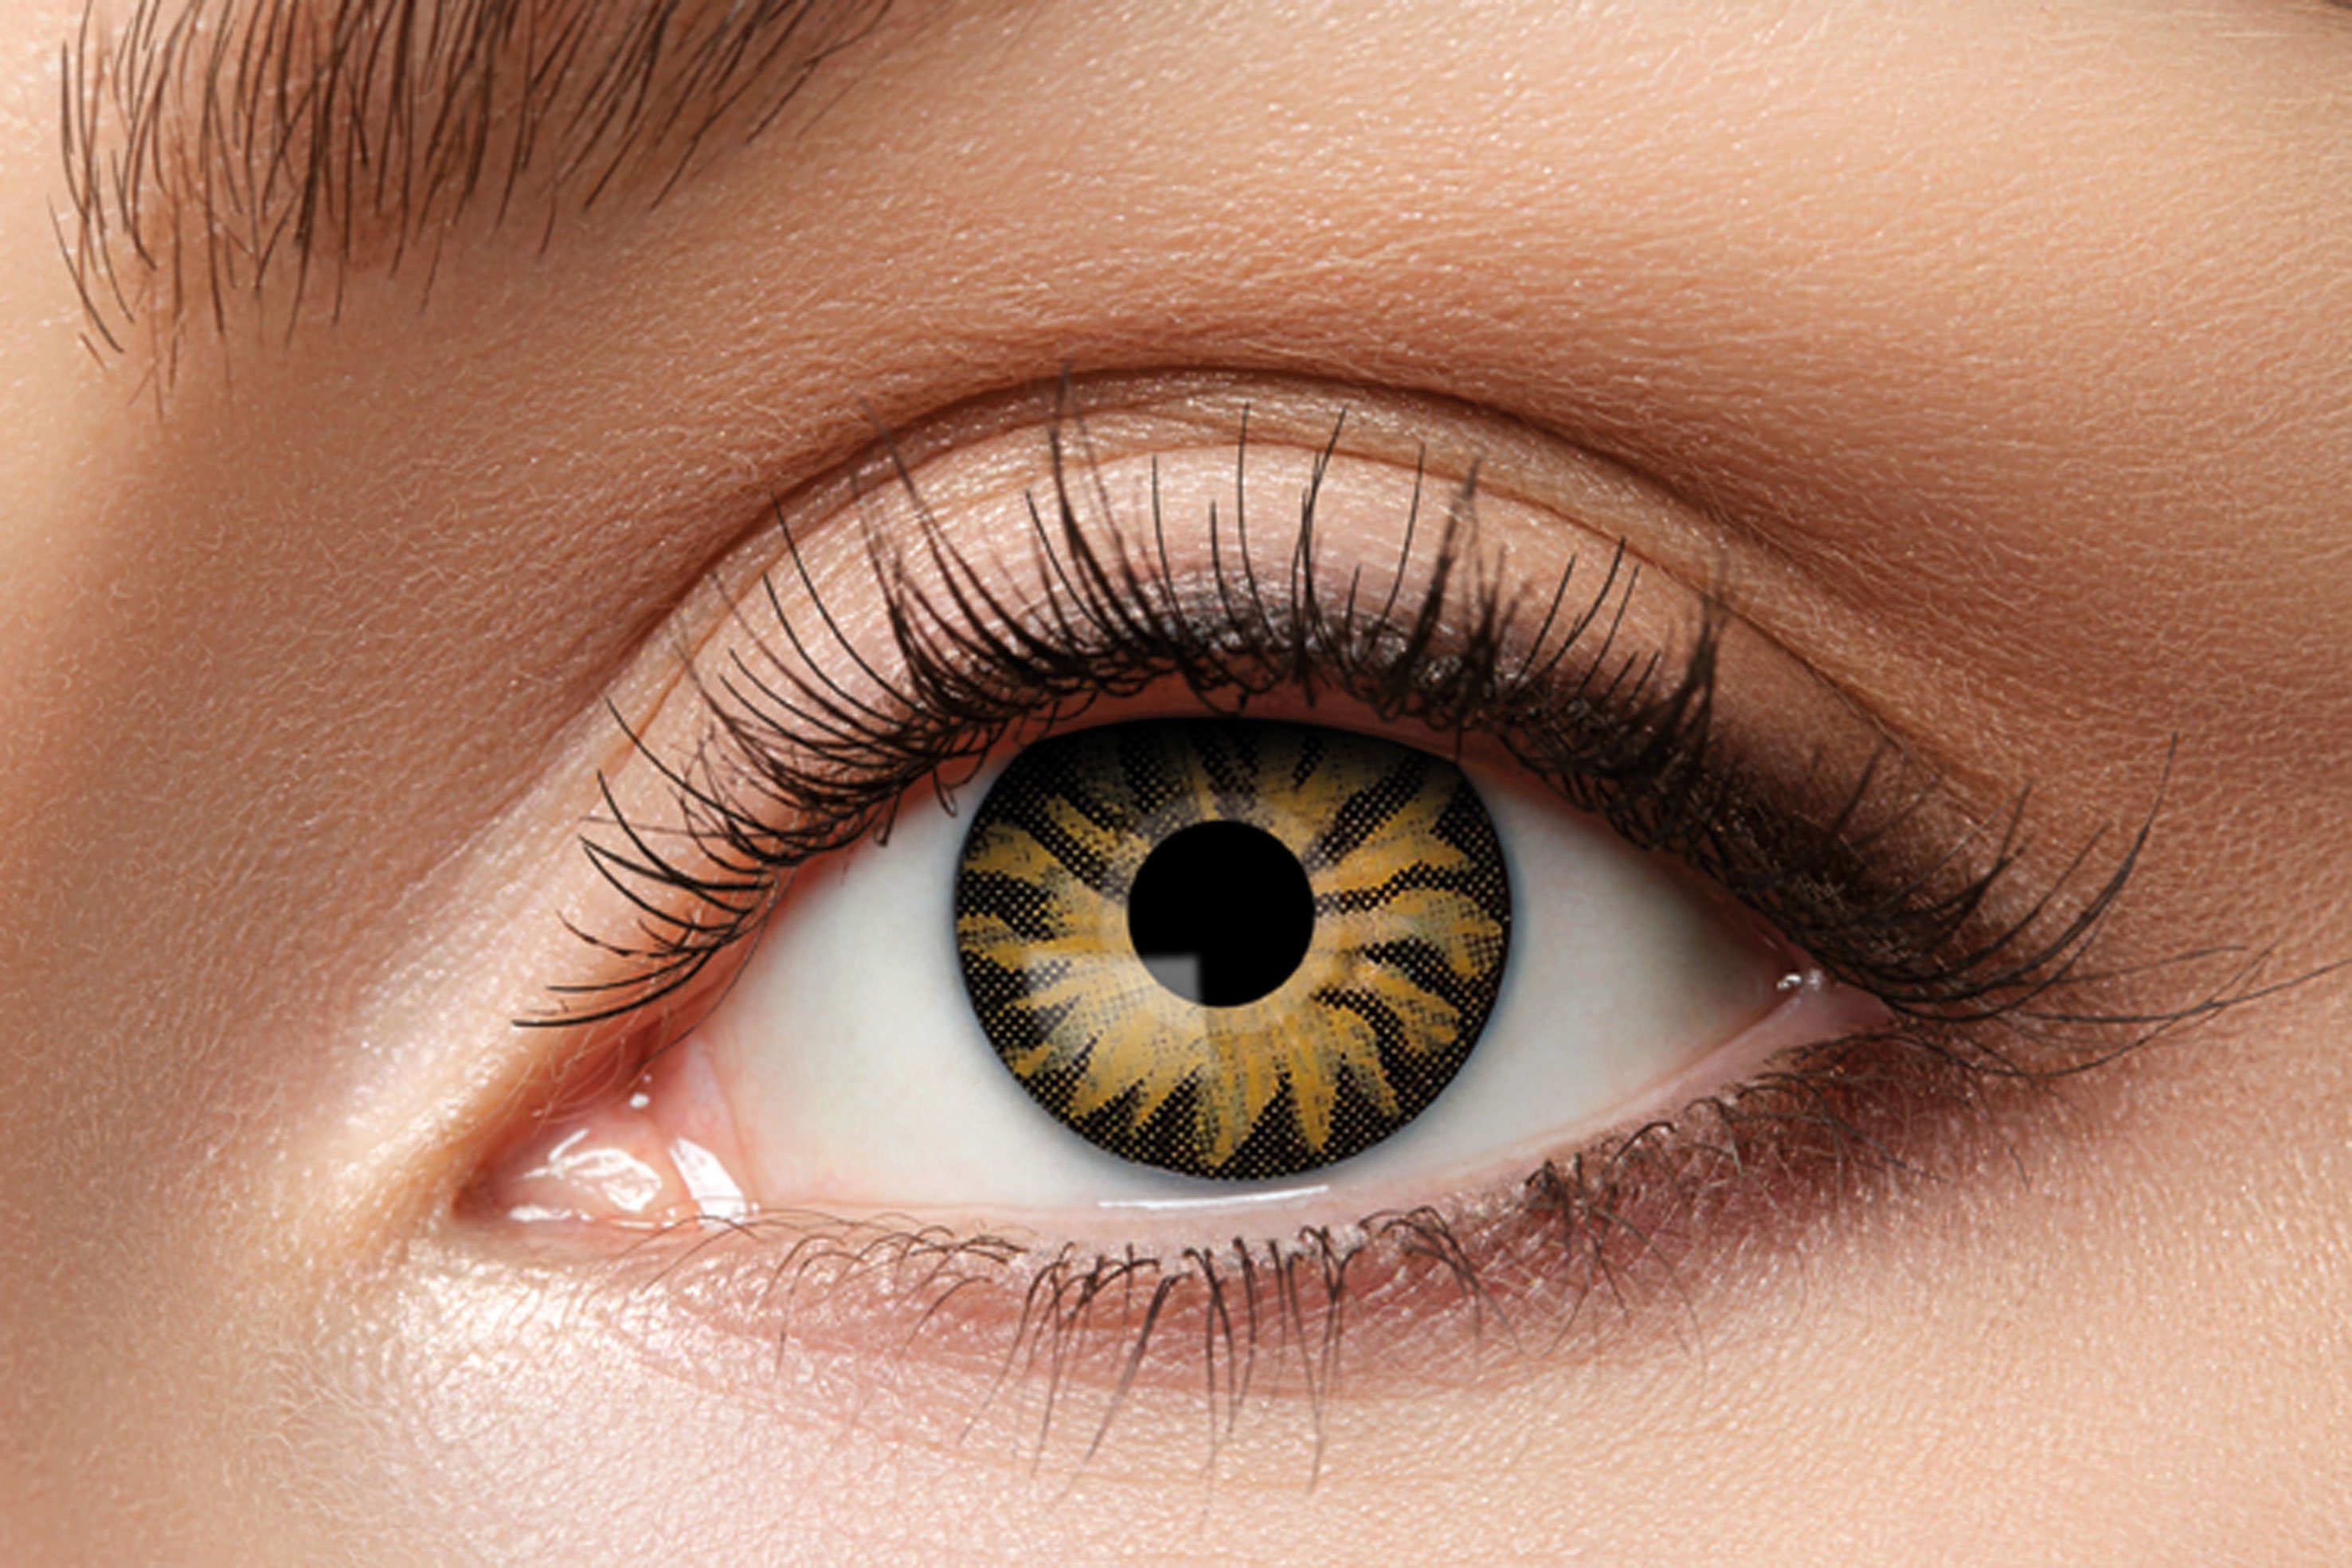 Eyecatcher Farblinsen Tiger Kontaktlinsen. Motiv Effektlinsen.